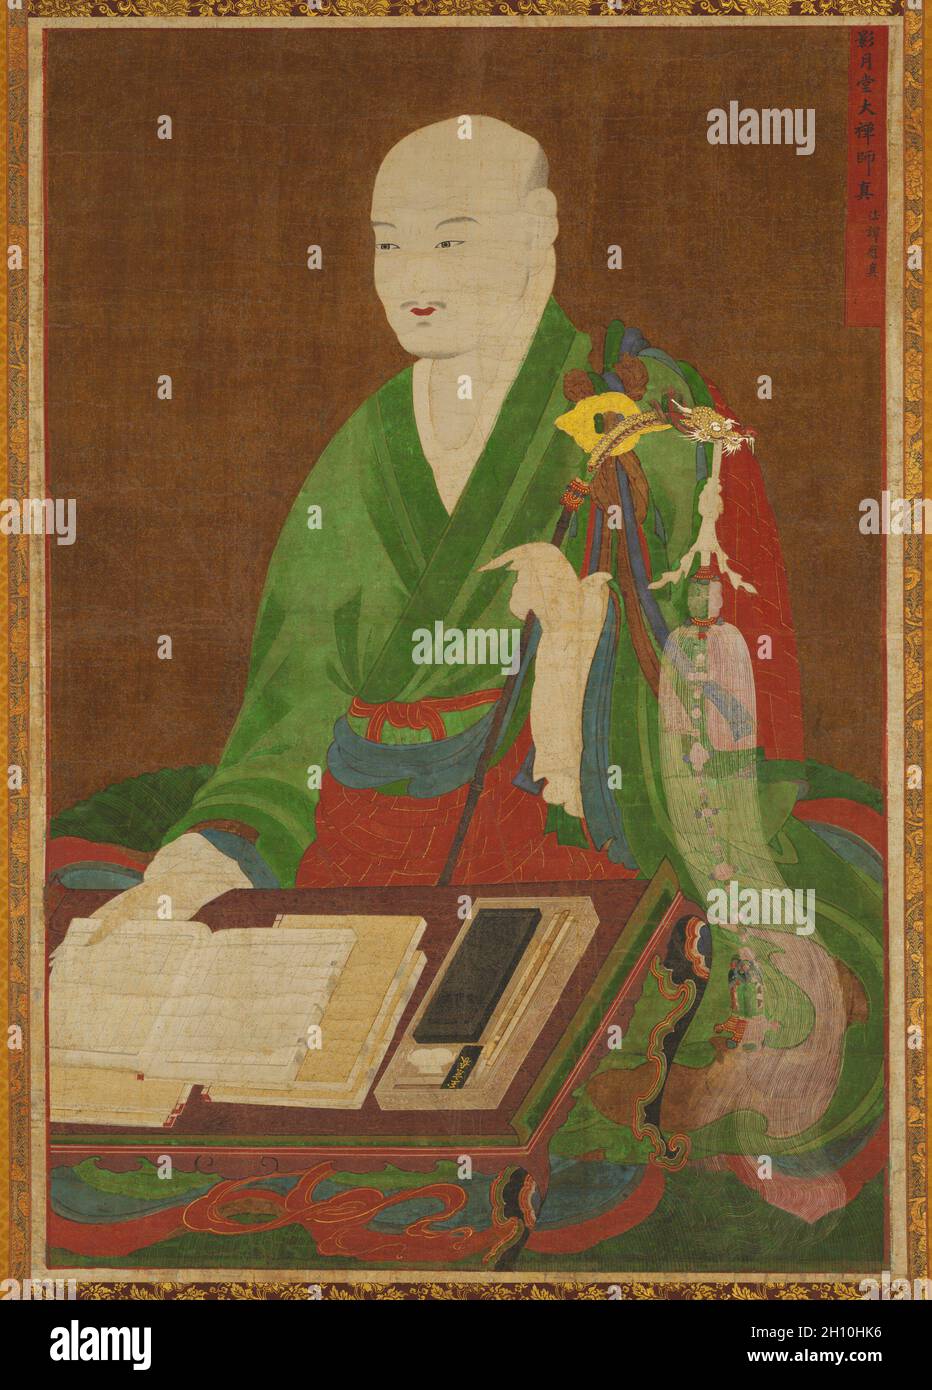 Retrato del Gran Maestro Yeongwoldang Eungjin, 1700s. Corea, dinastía  Joseon (1392-1910). Rollo colgante, tinta, color